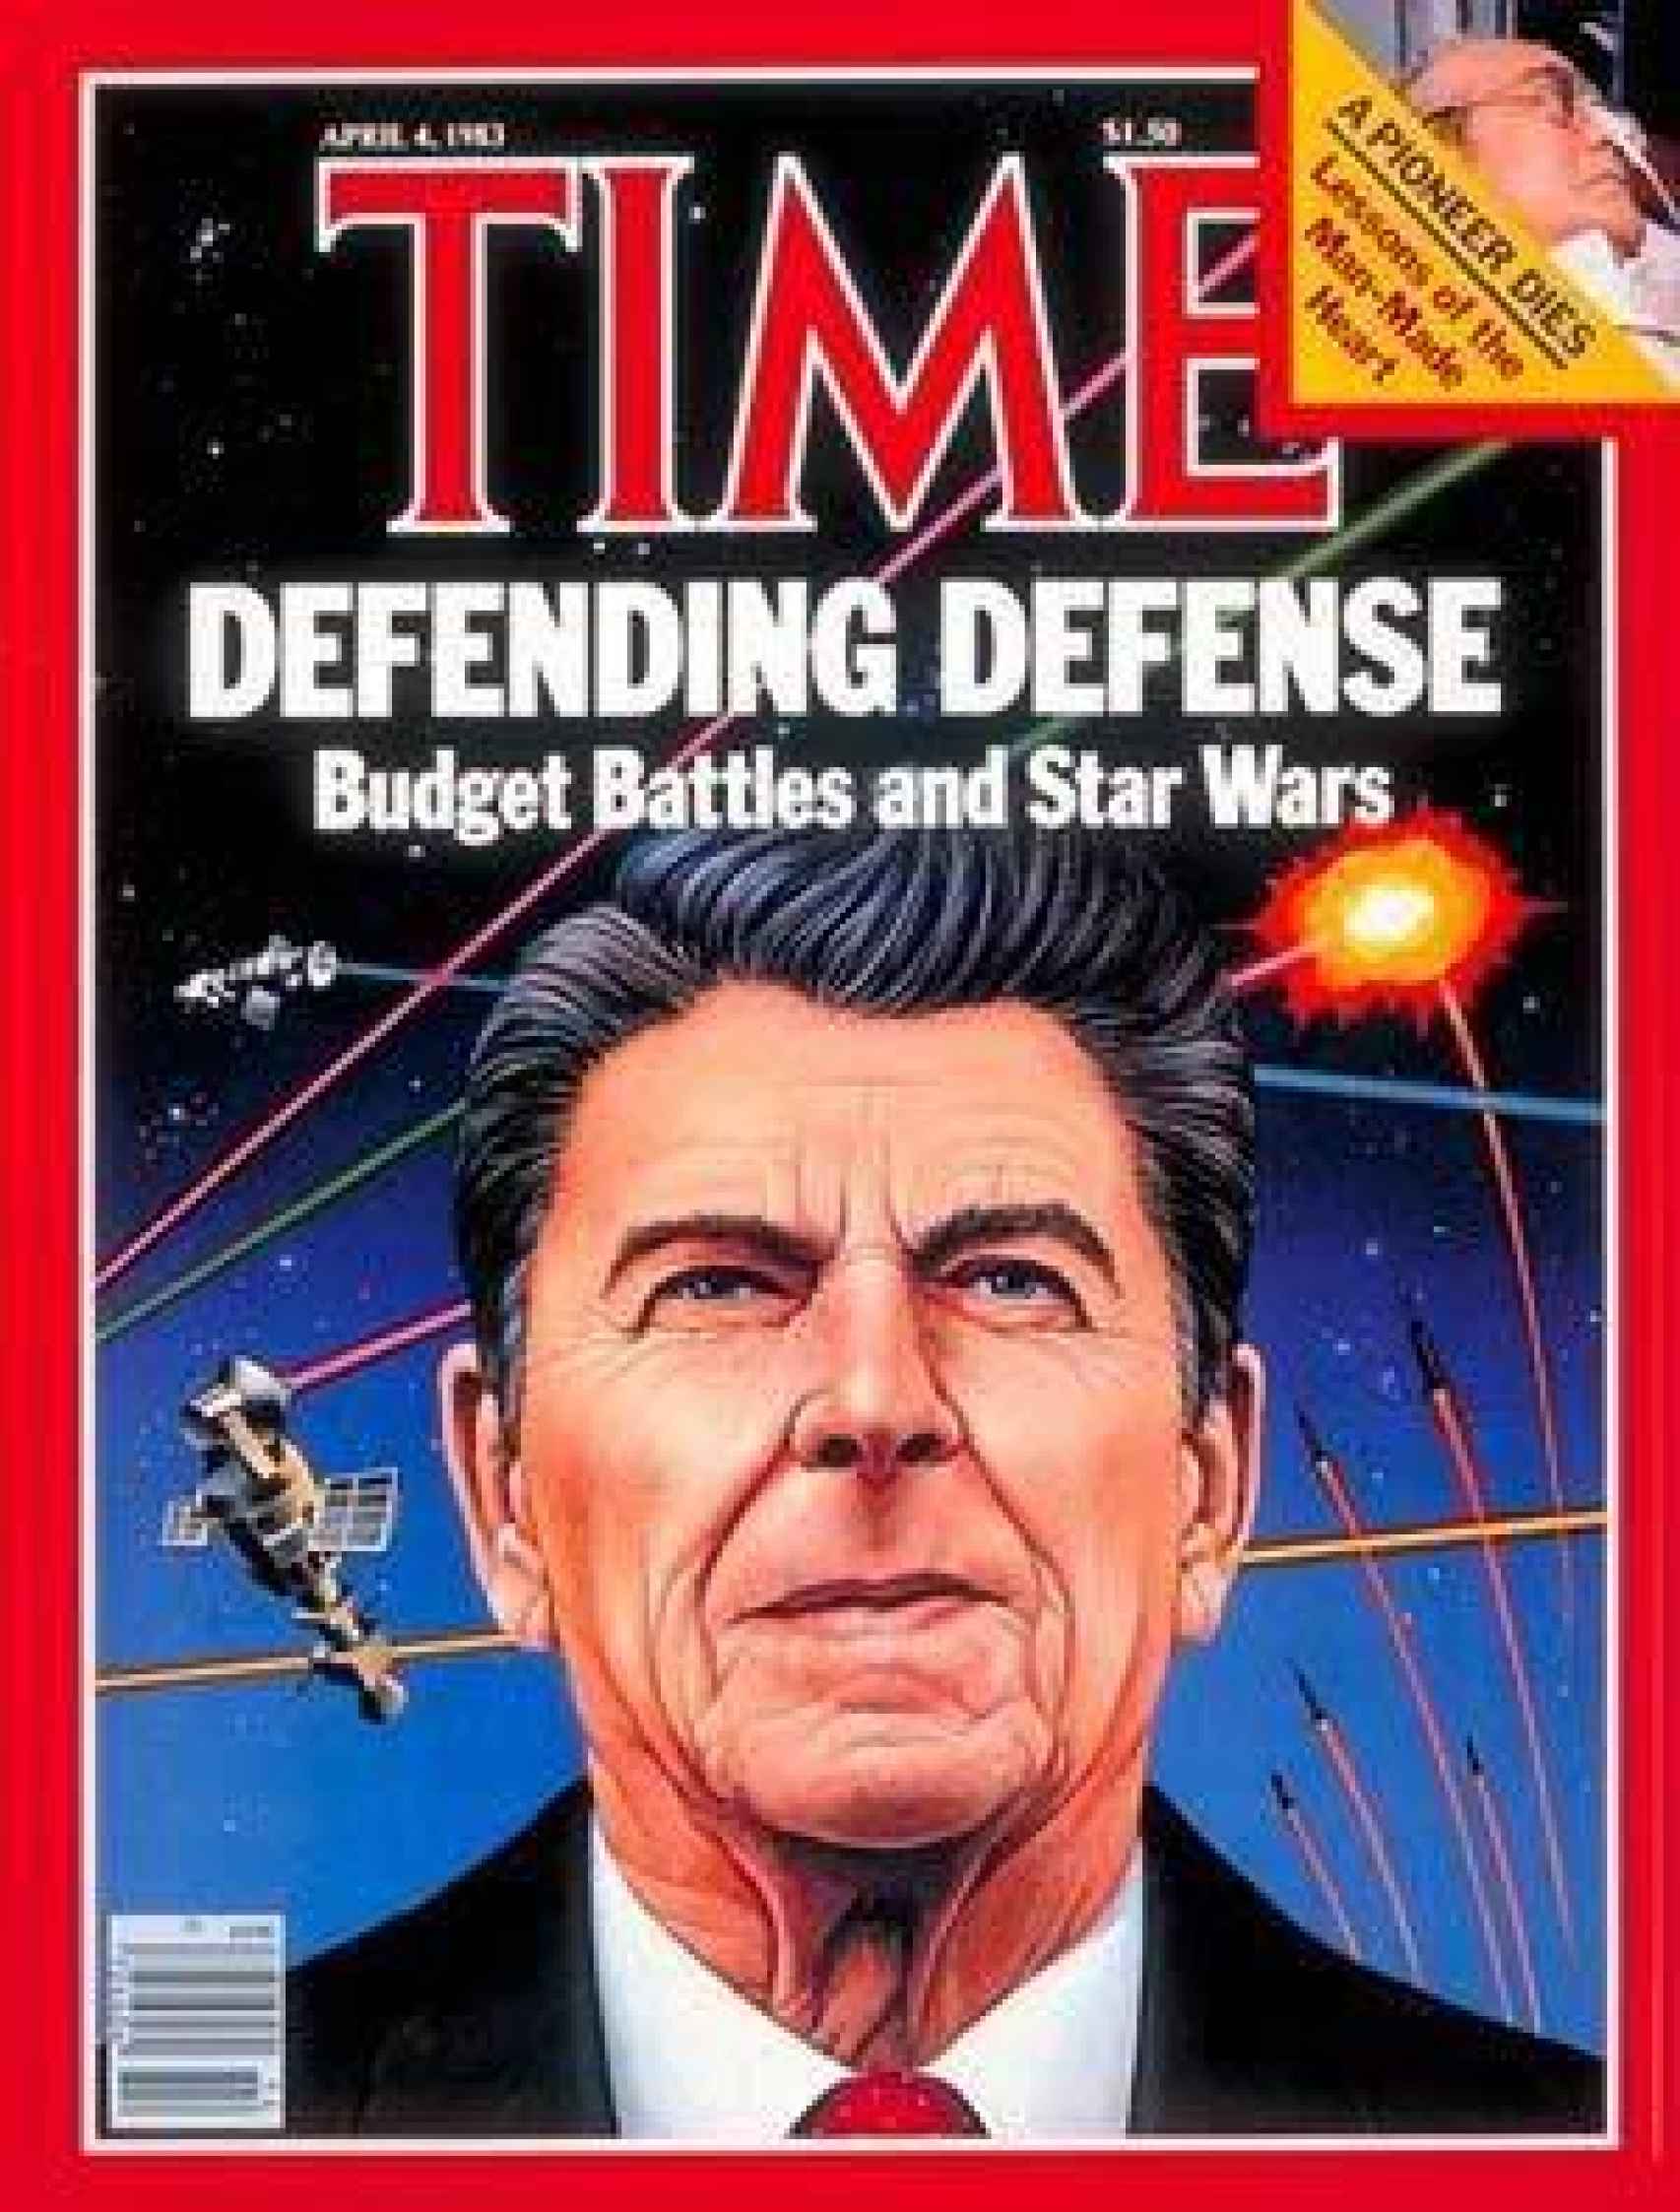 Portada de 'Time' con Reagan y la 'guerra de las estrellas'.